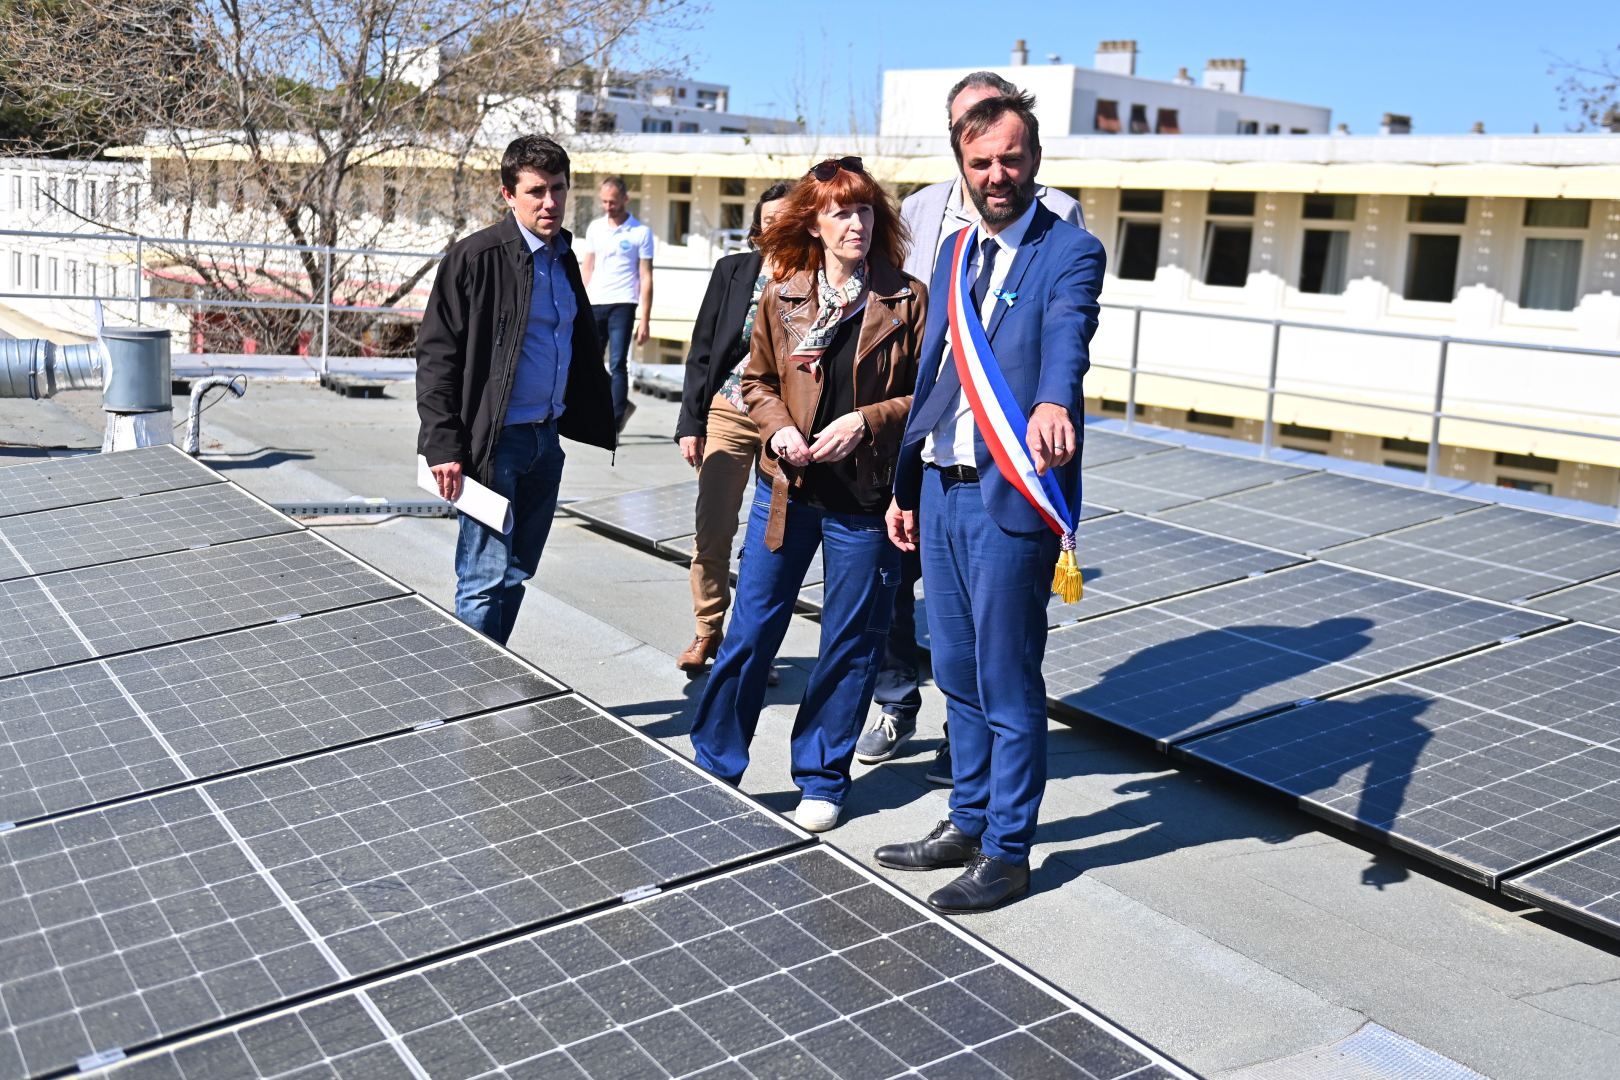 Des persones marchent sur le toit de l'école pour voir les panneaux solaires